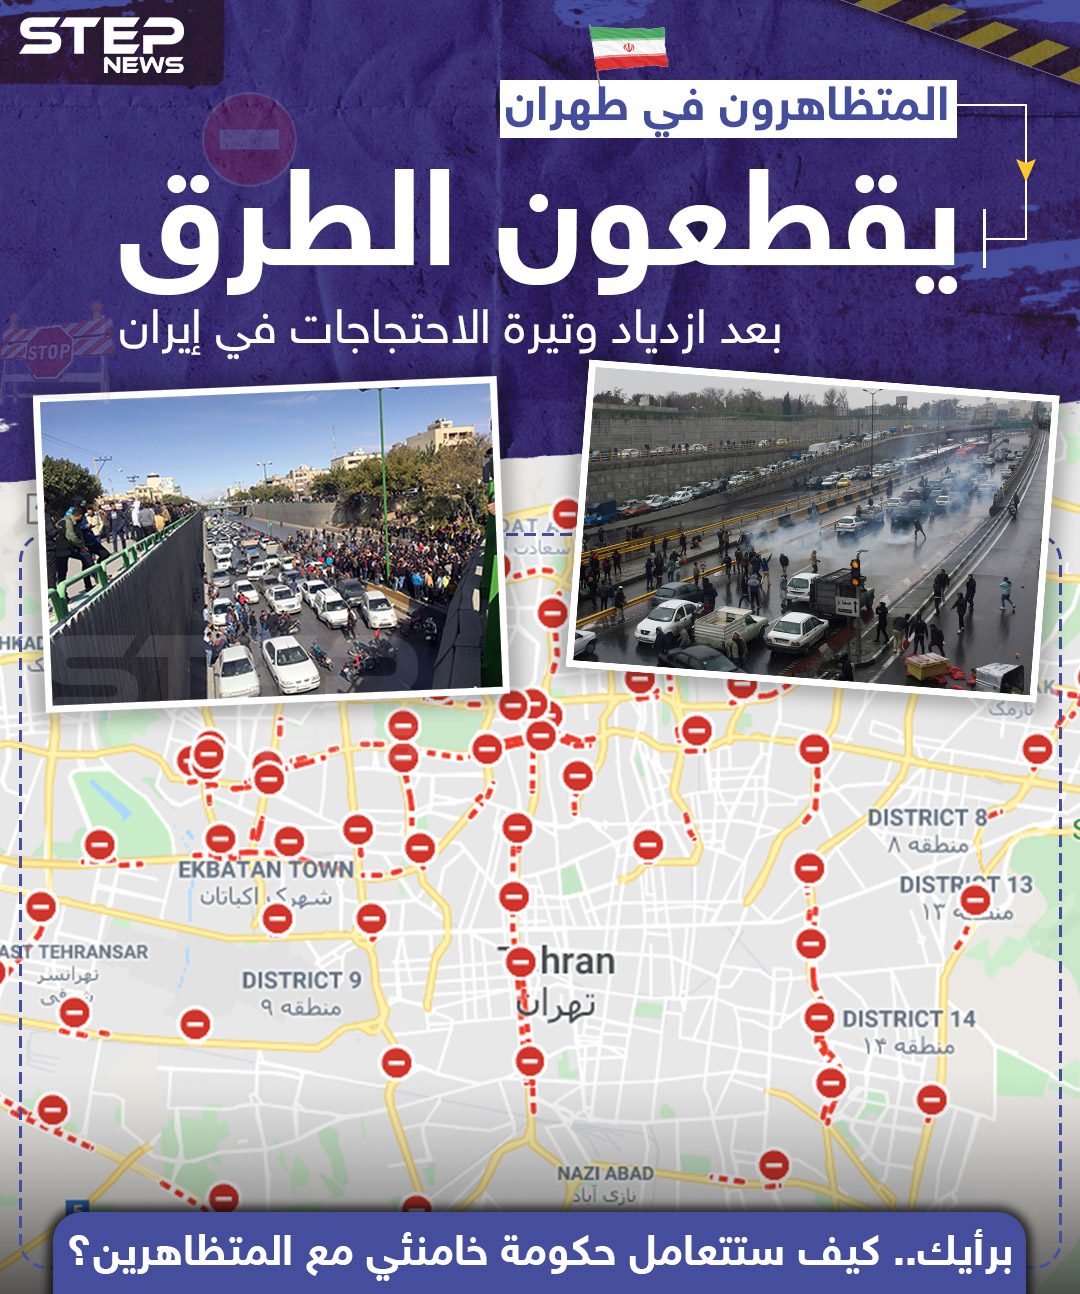 المتظاهرون في طهران يقطعون الطرق بعد ازدياد وتيرة الاحتجاجات في إيران